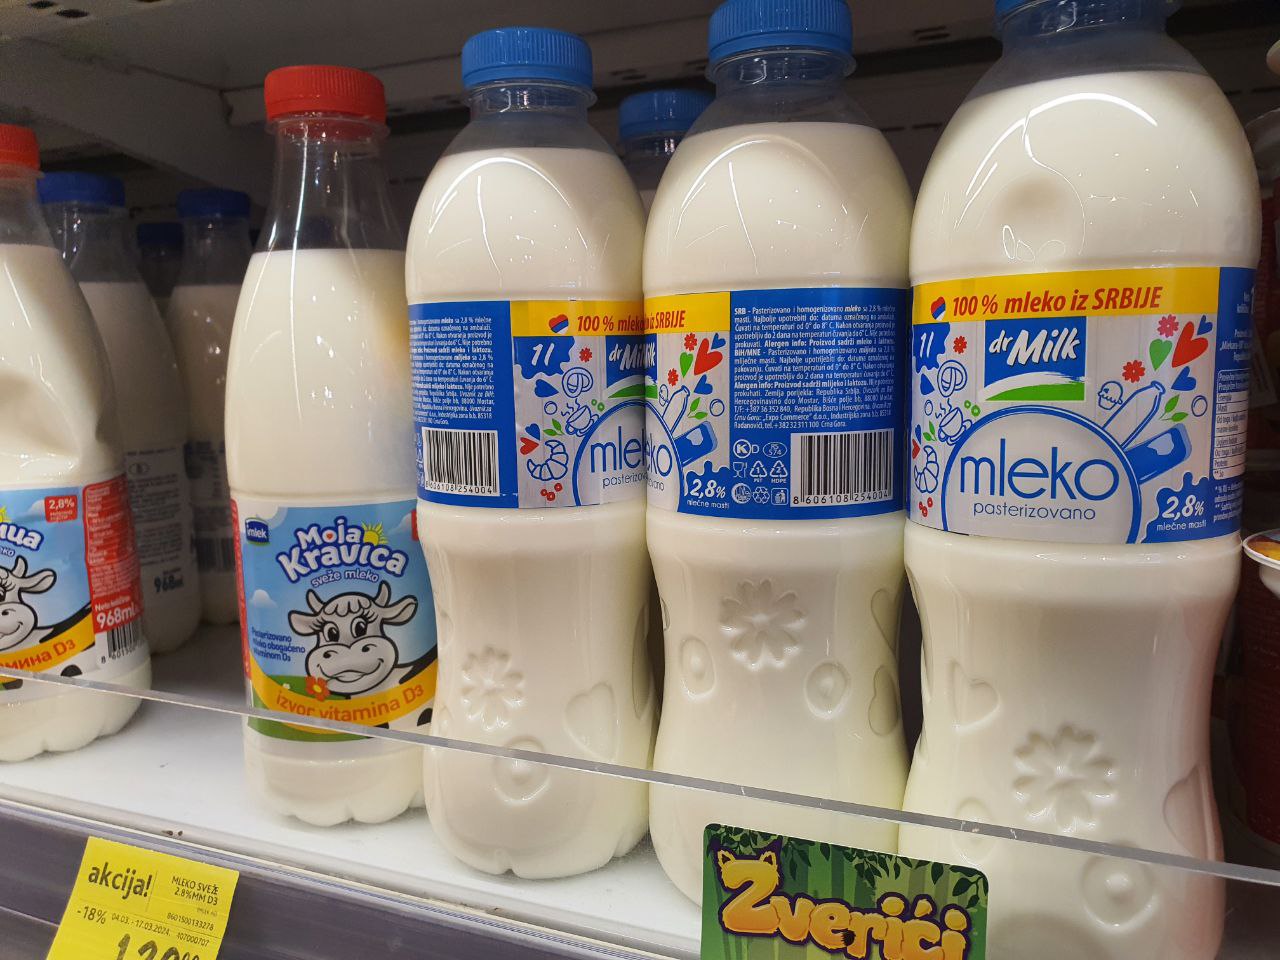 Молочные продукты - что любят в Сербии